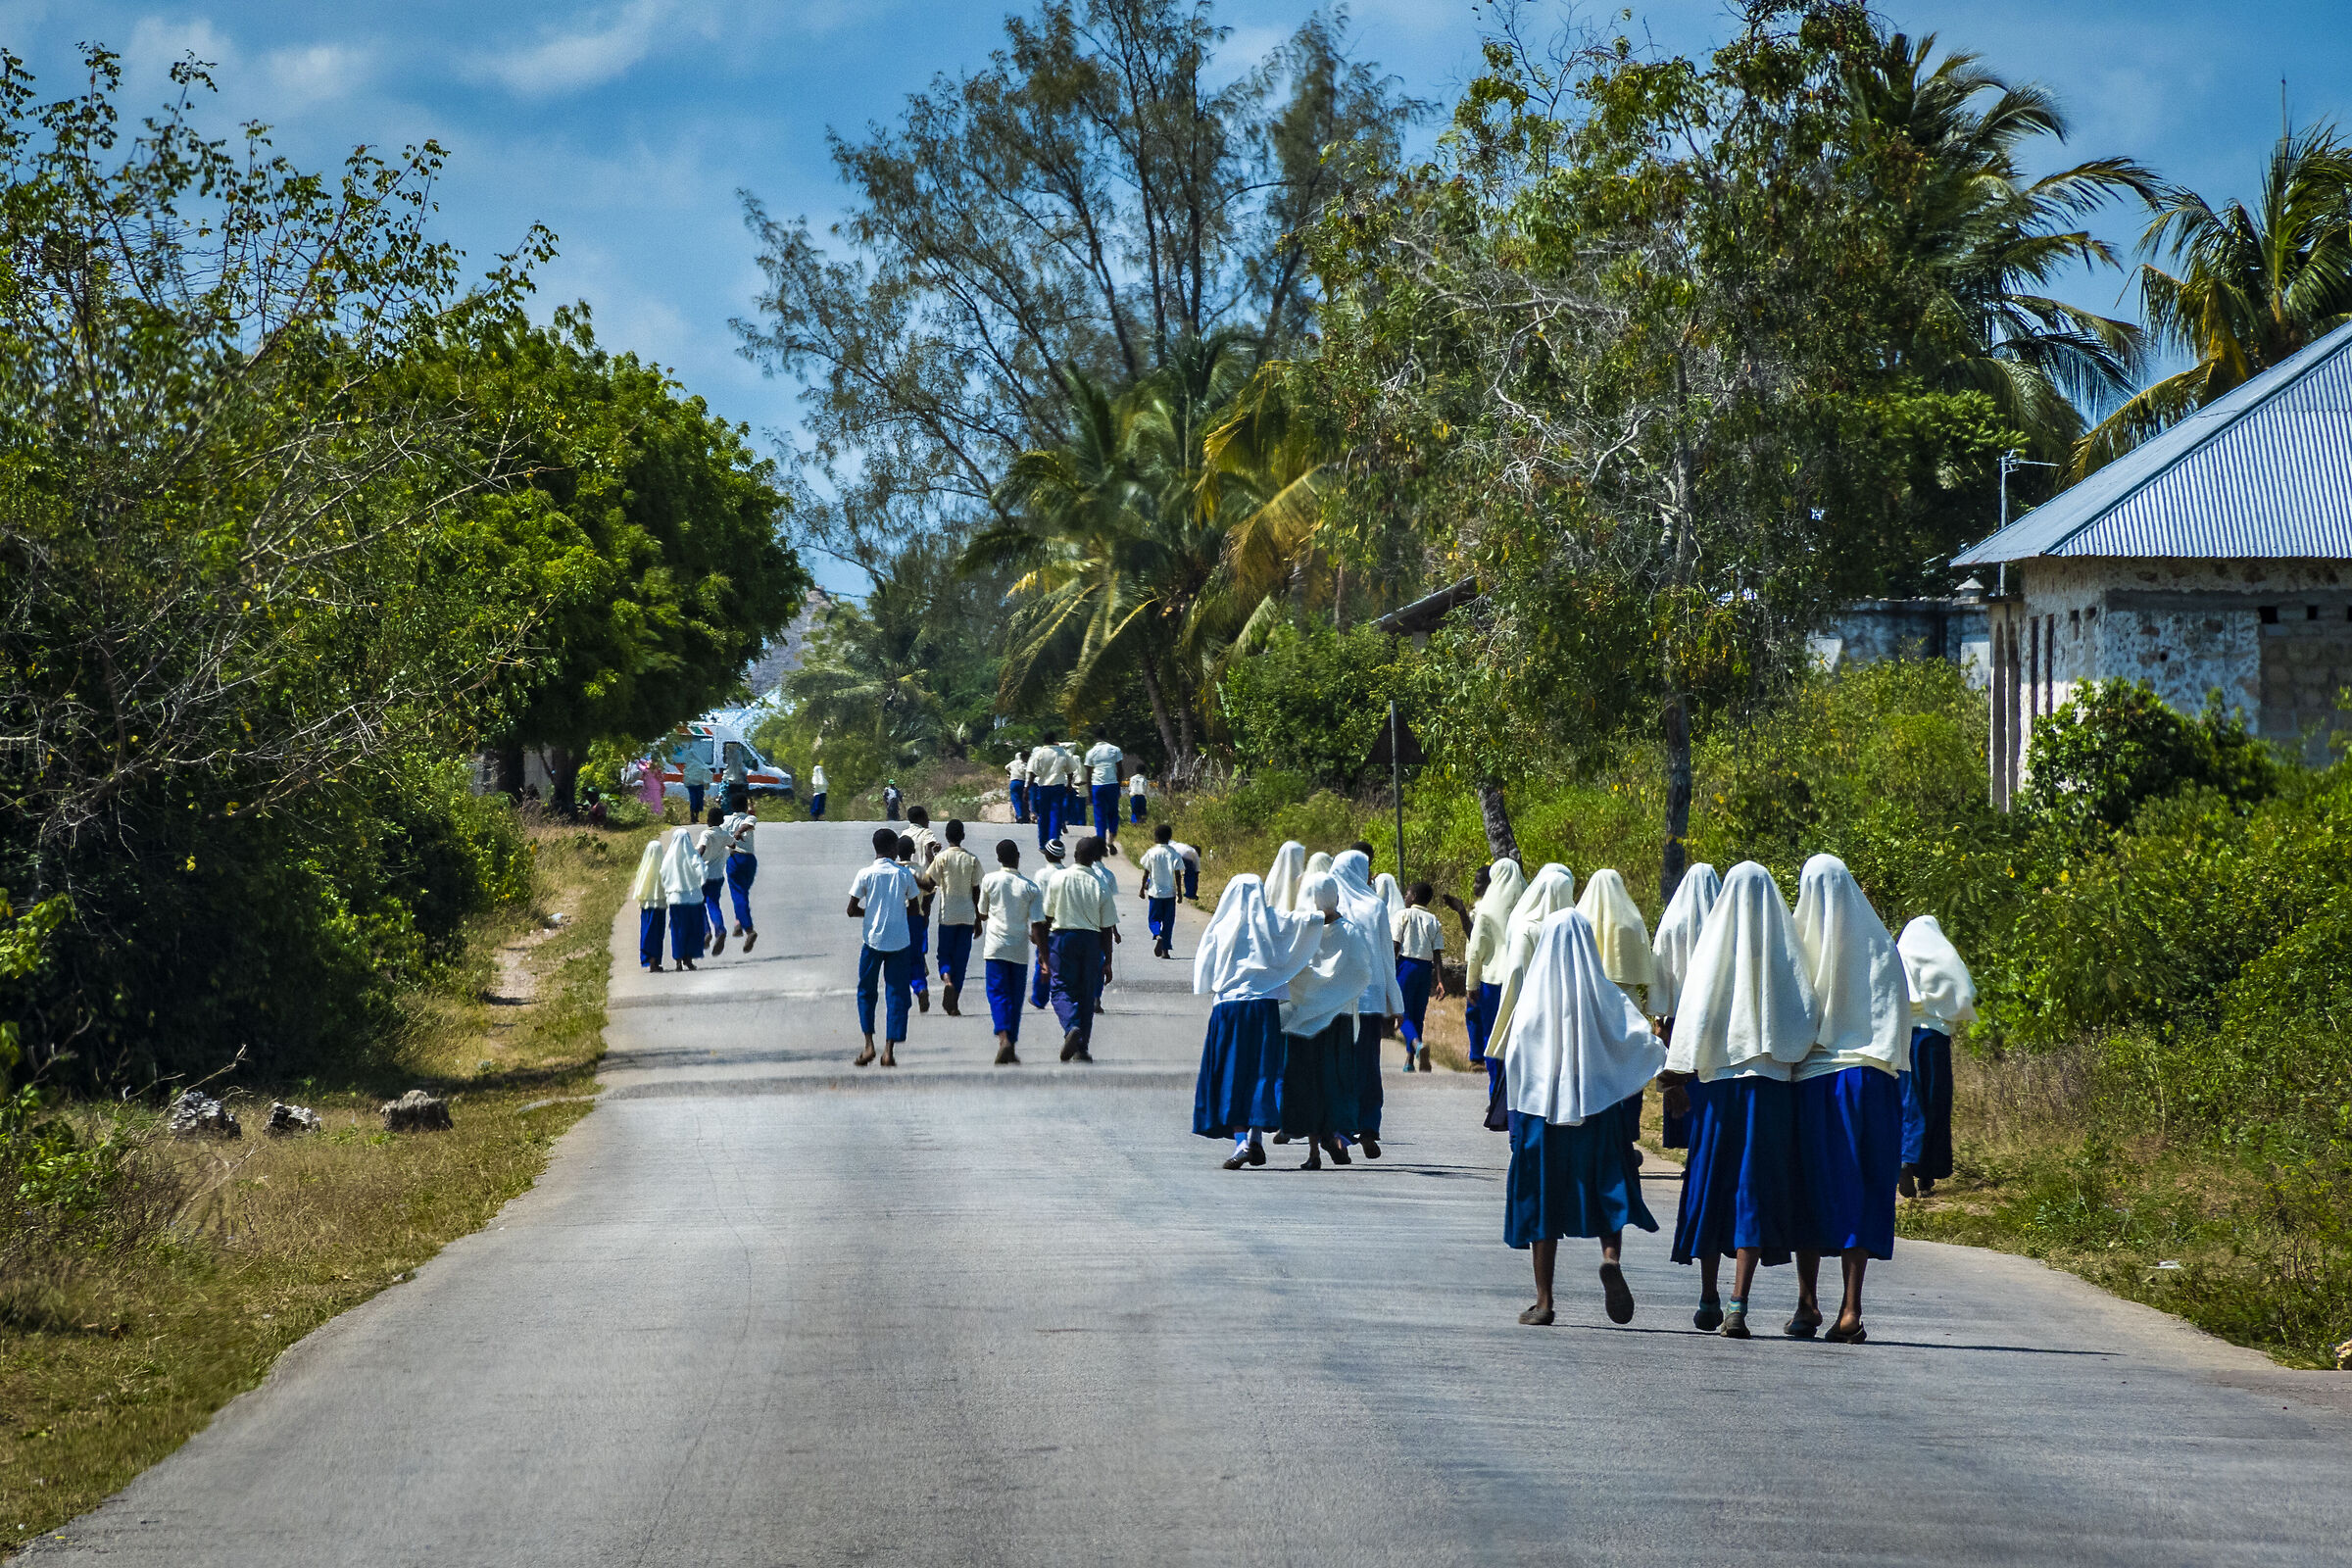 Uscita di scuola - Zanzibar - Tanzania...